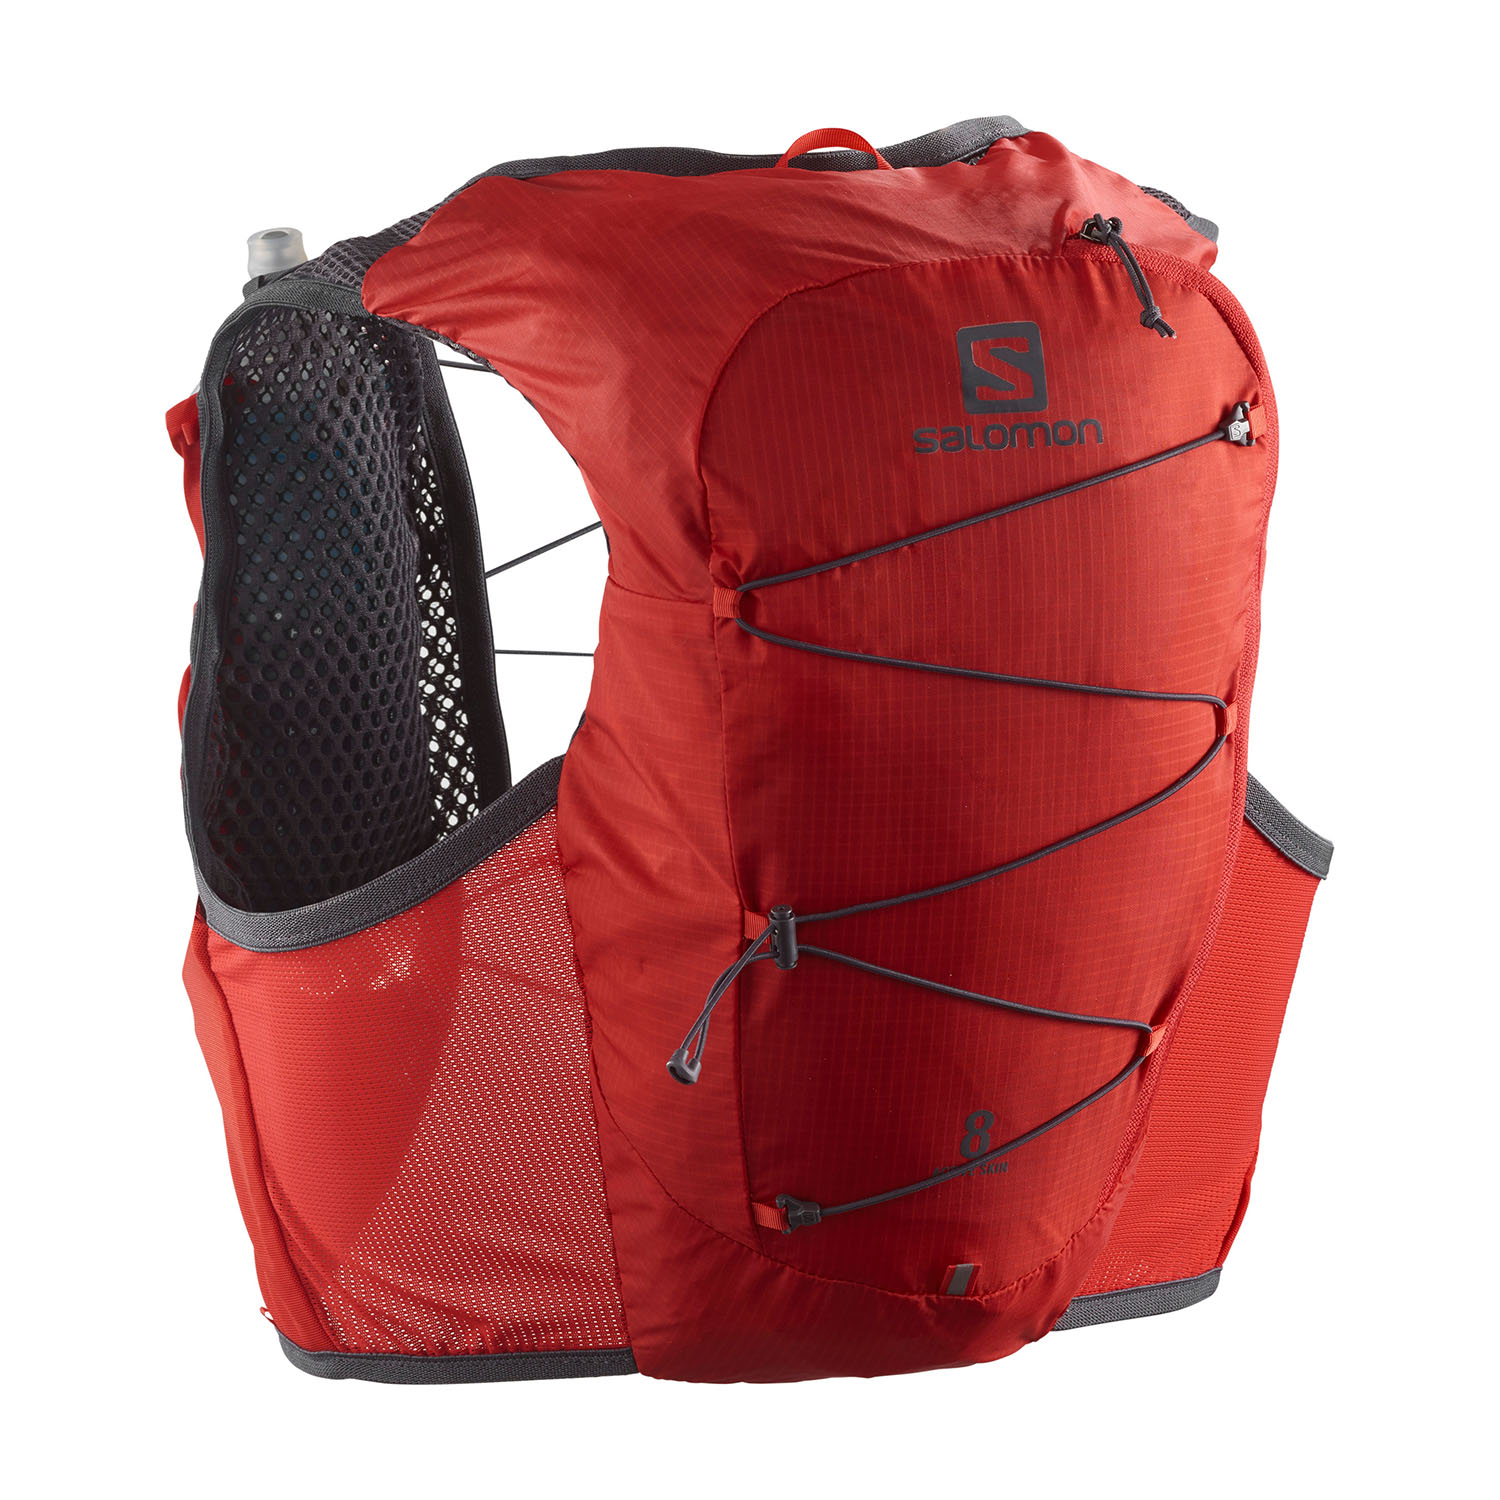 Salomon Active Skin 8 Set Backpack - Fiery Red/Ebony